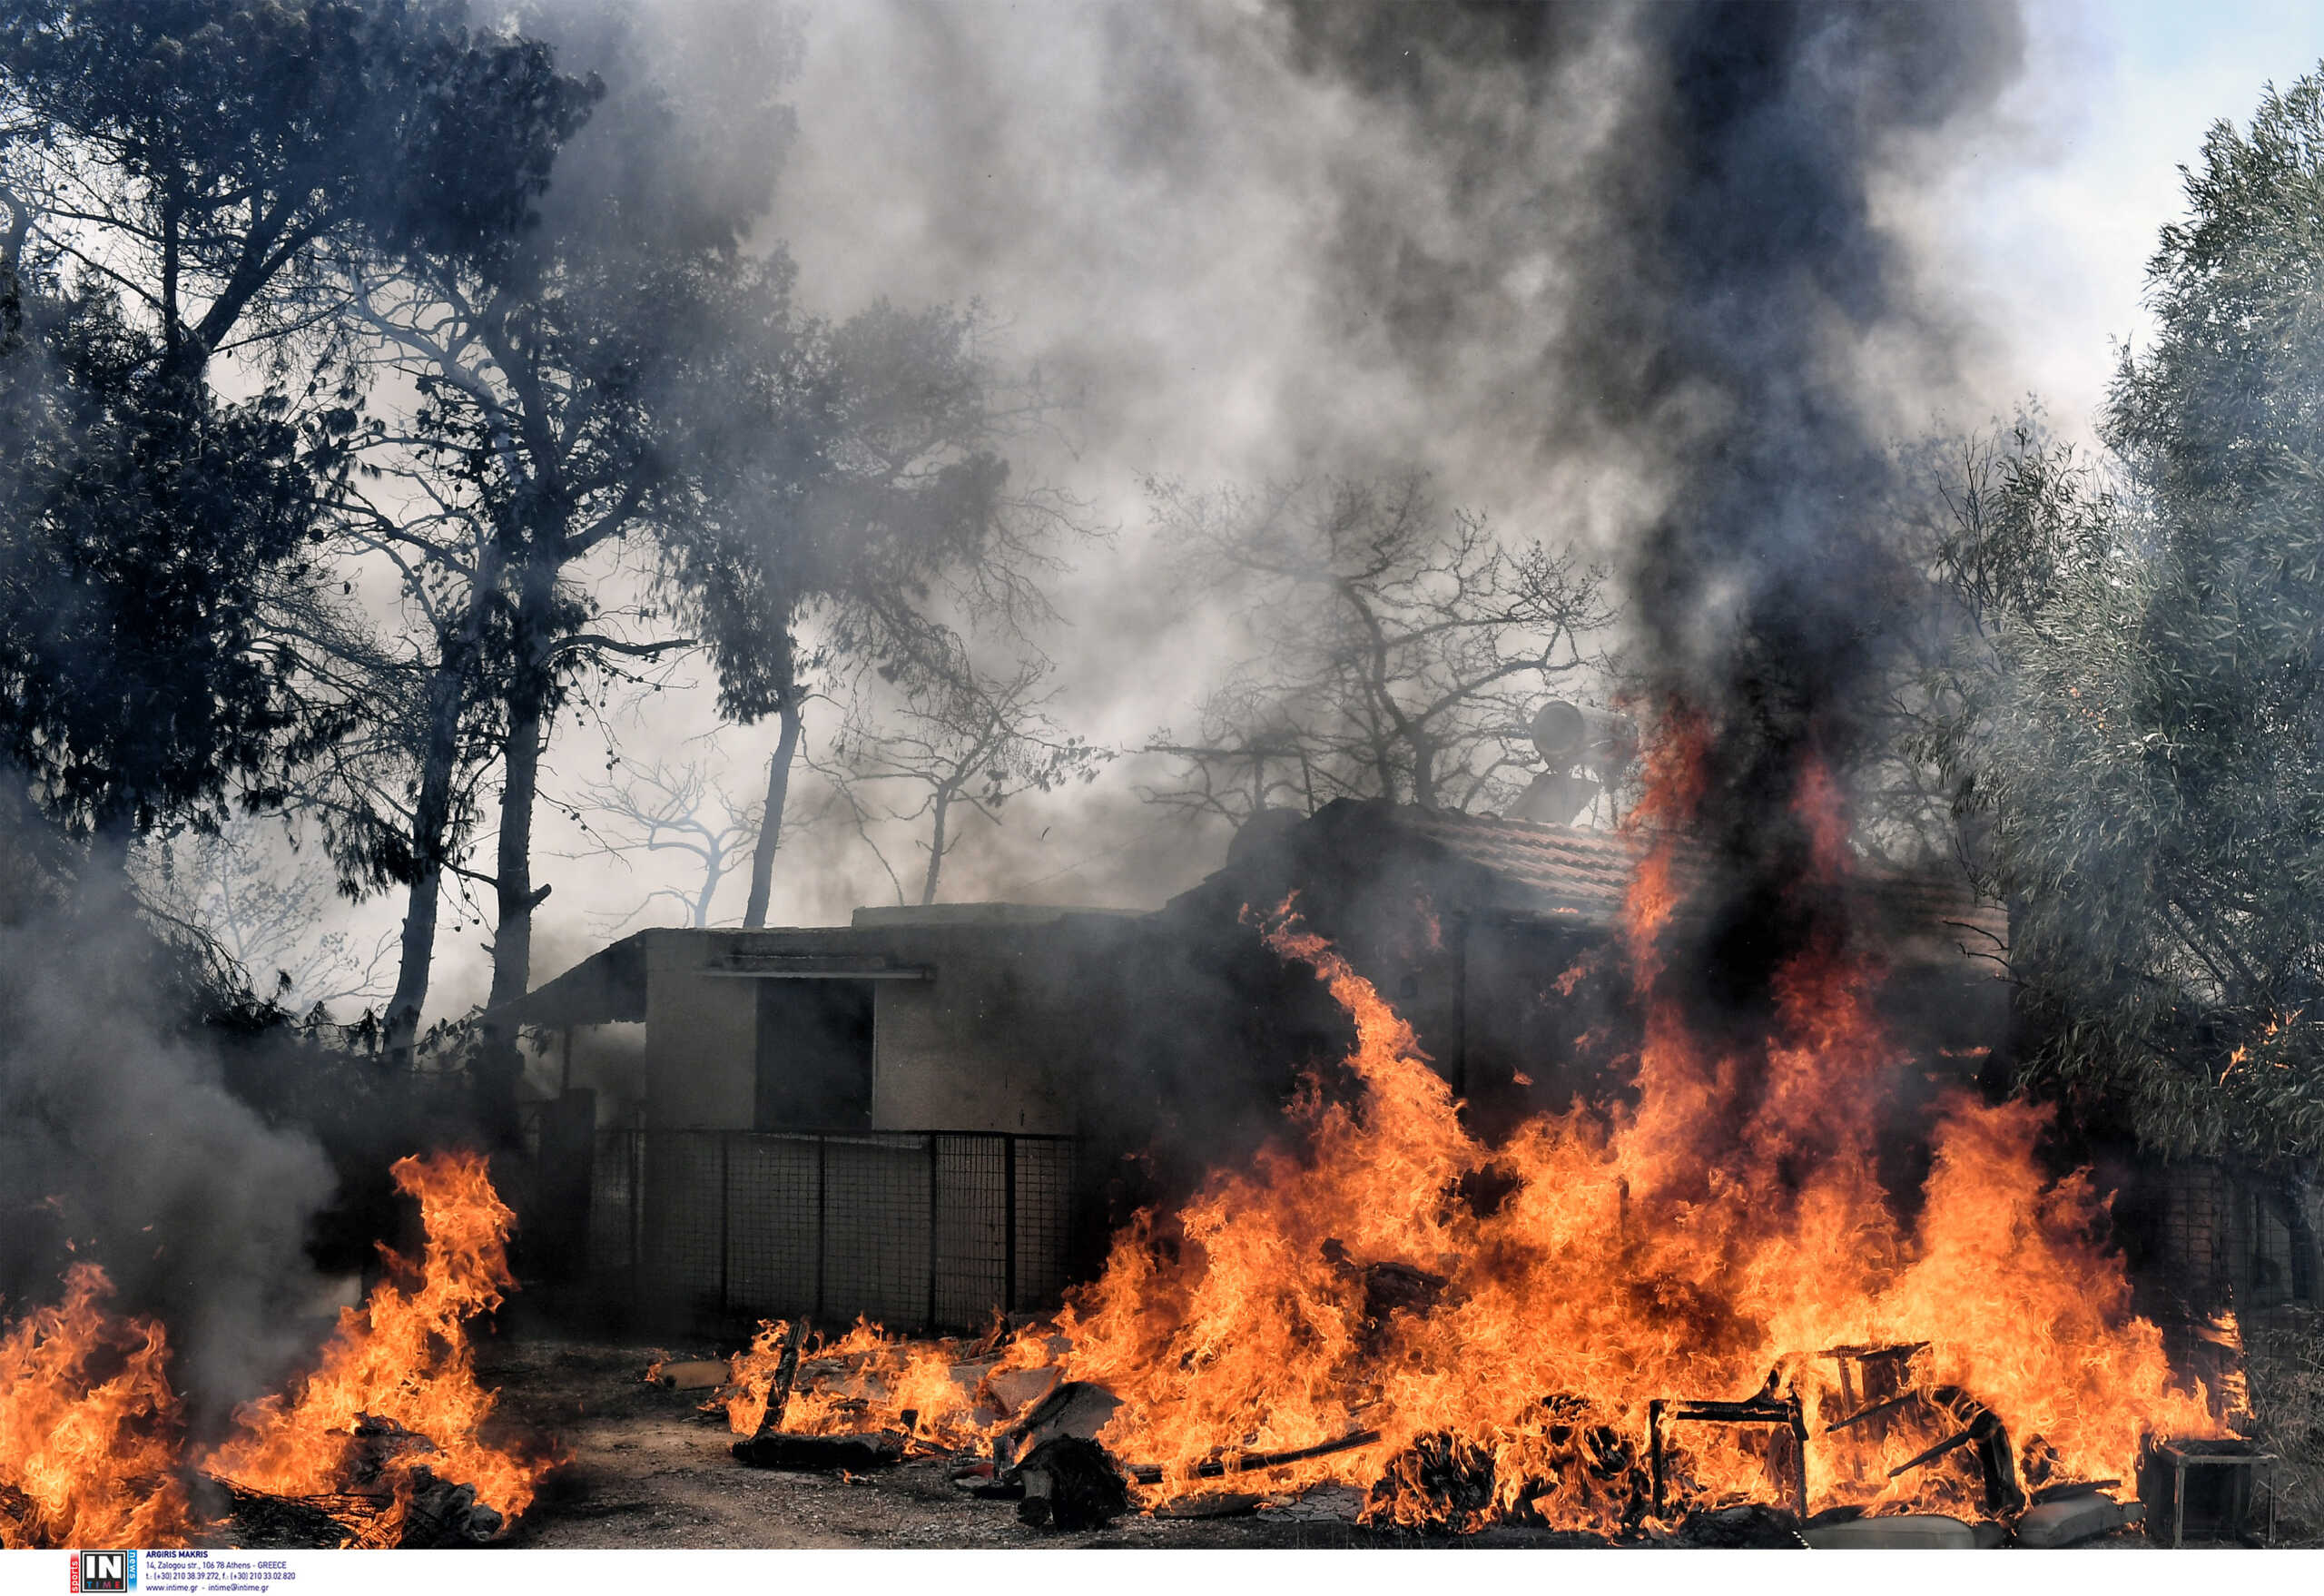 Φωτιά στο Λουτράκι: Μάχη με πολλές εστίες και αναζωπυρώσεις – Σπίτια στις φλόγες στον Άγιο Χαράλαμπο, συνεχείς εκρήξεις